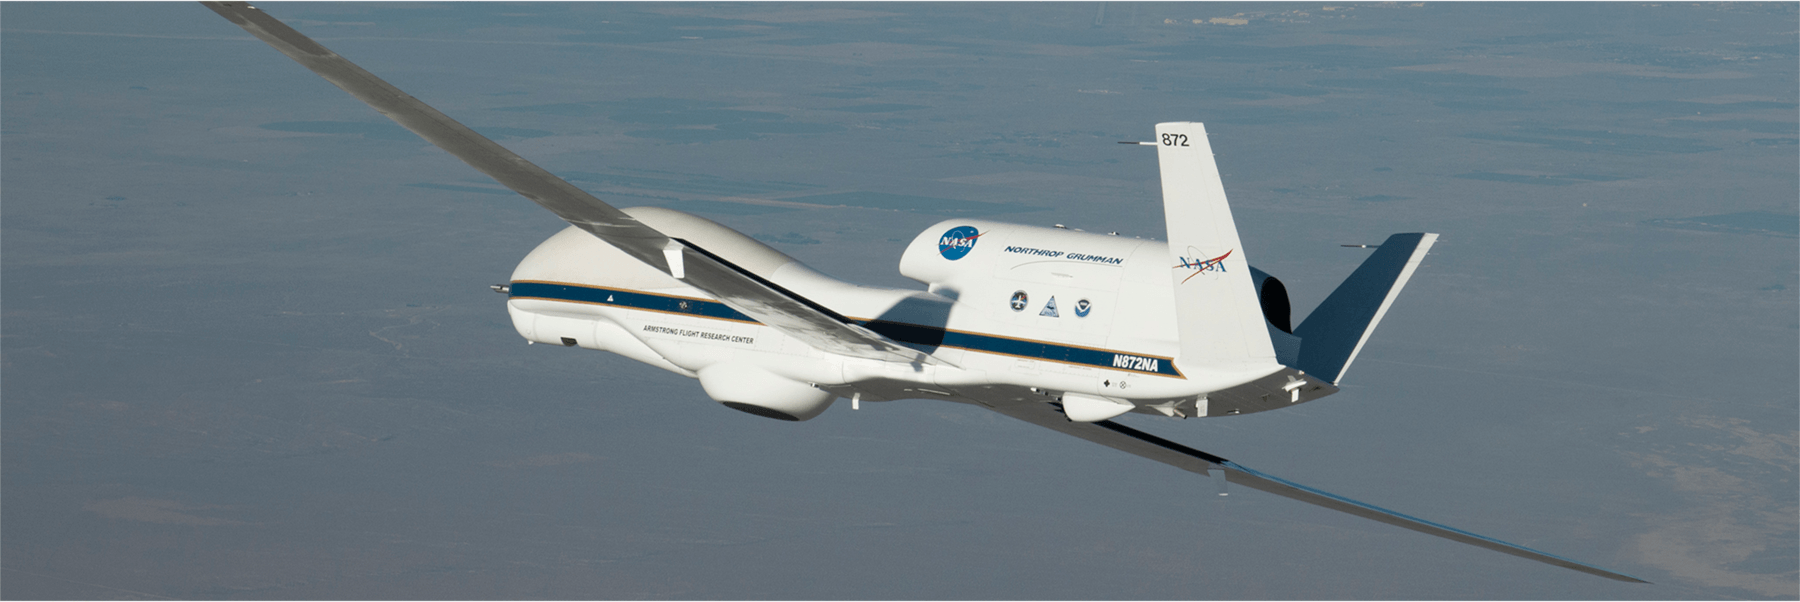 Global Hawk uncrewed aircraft (Credit: NASA)